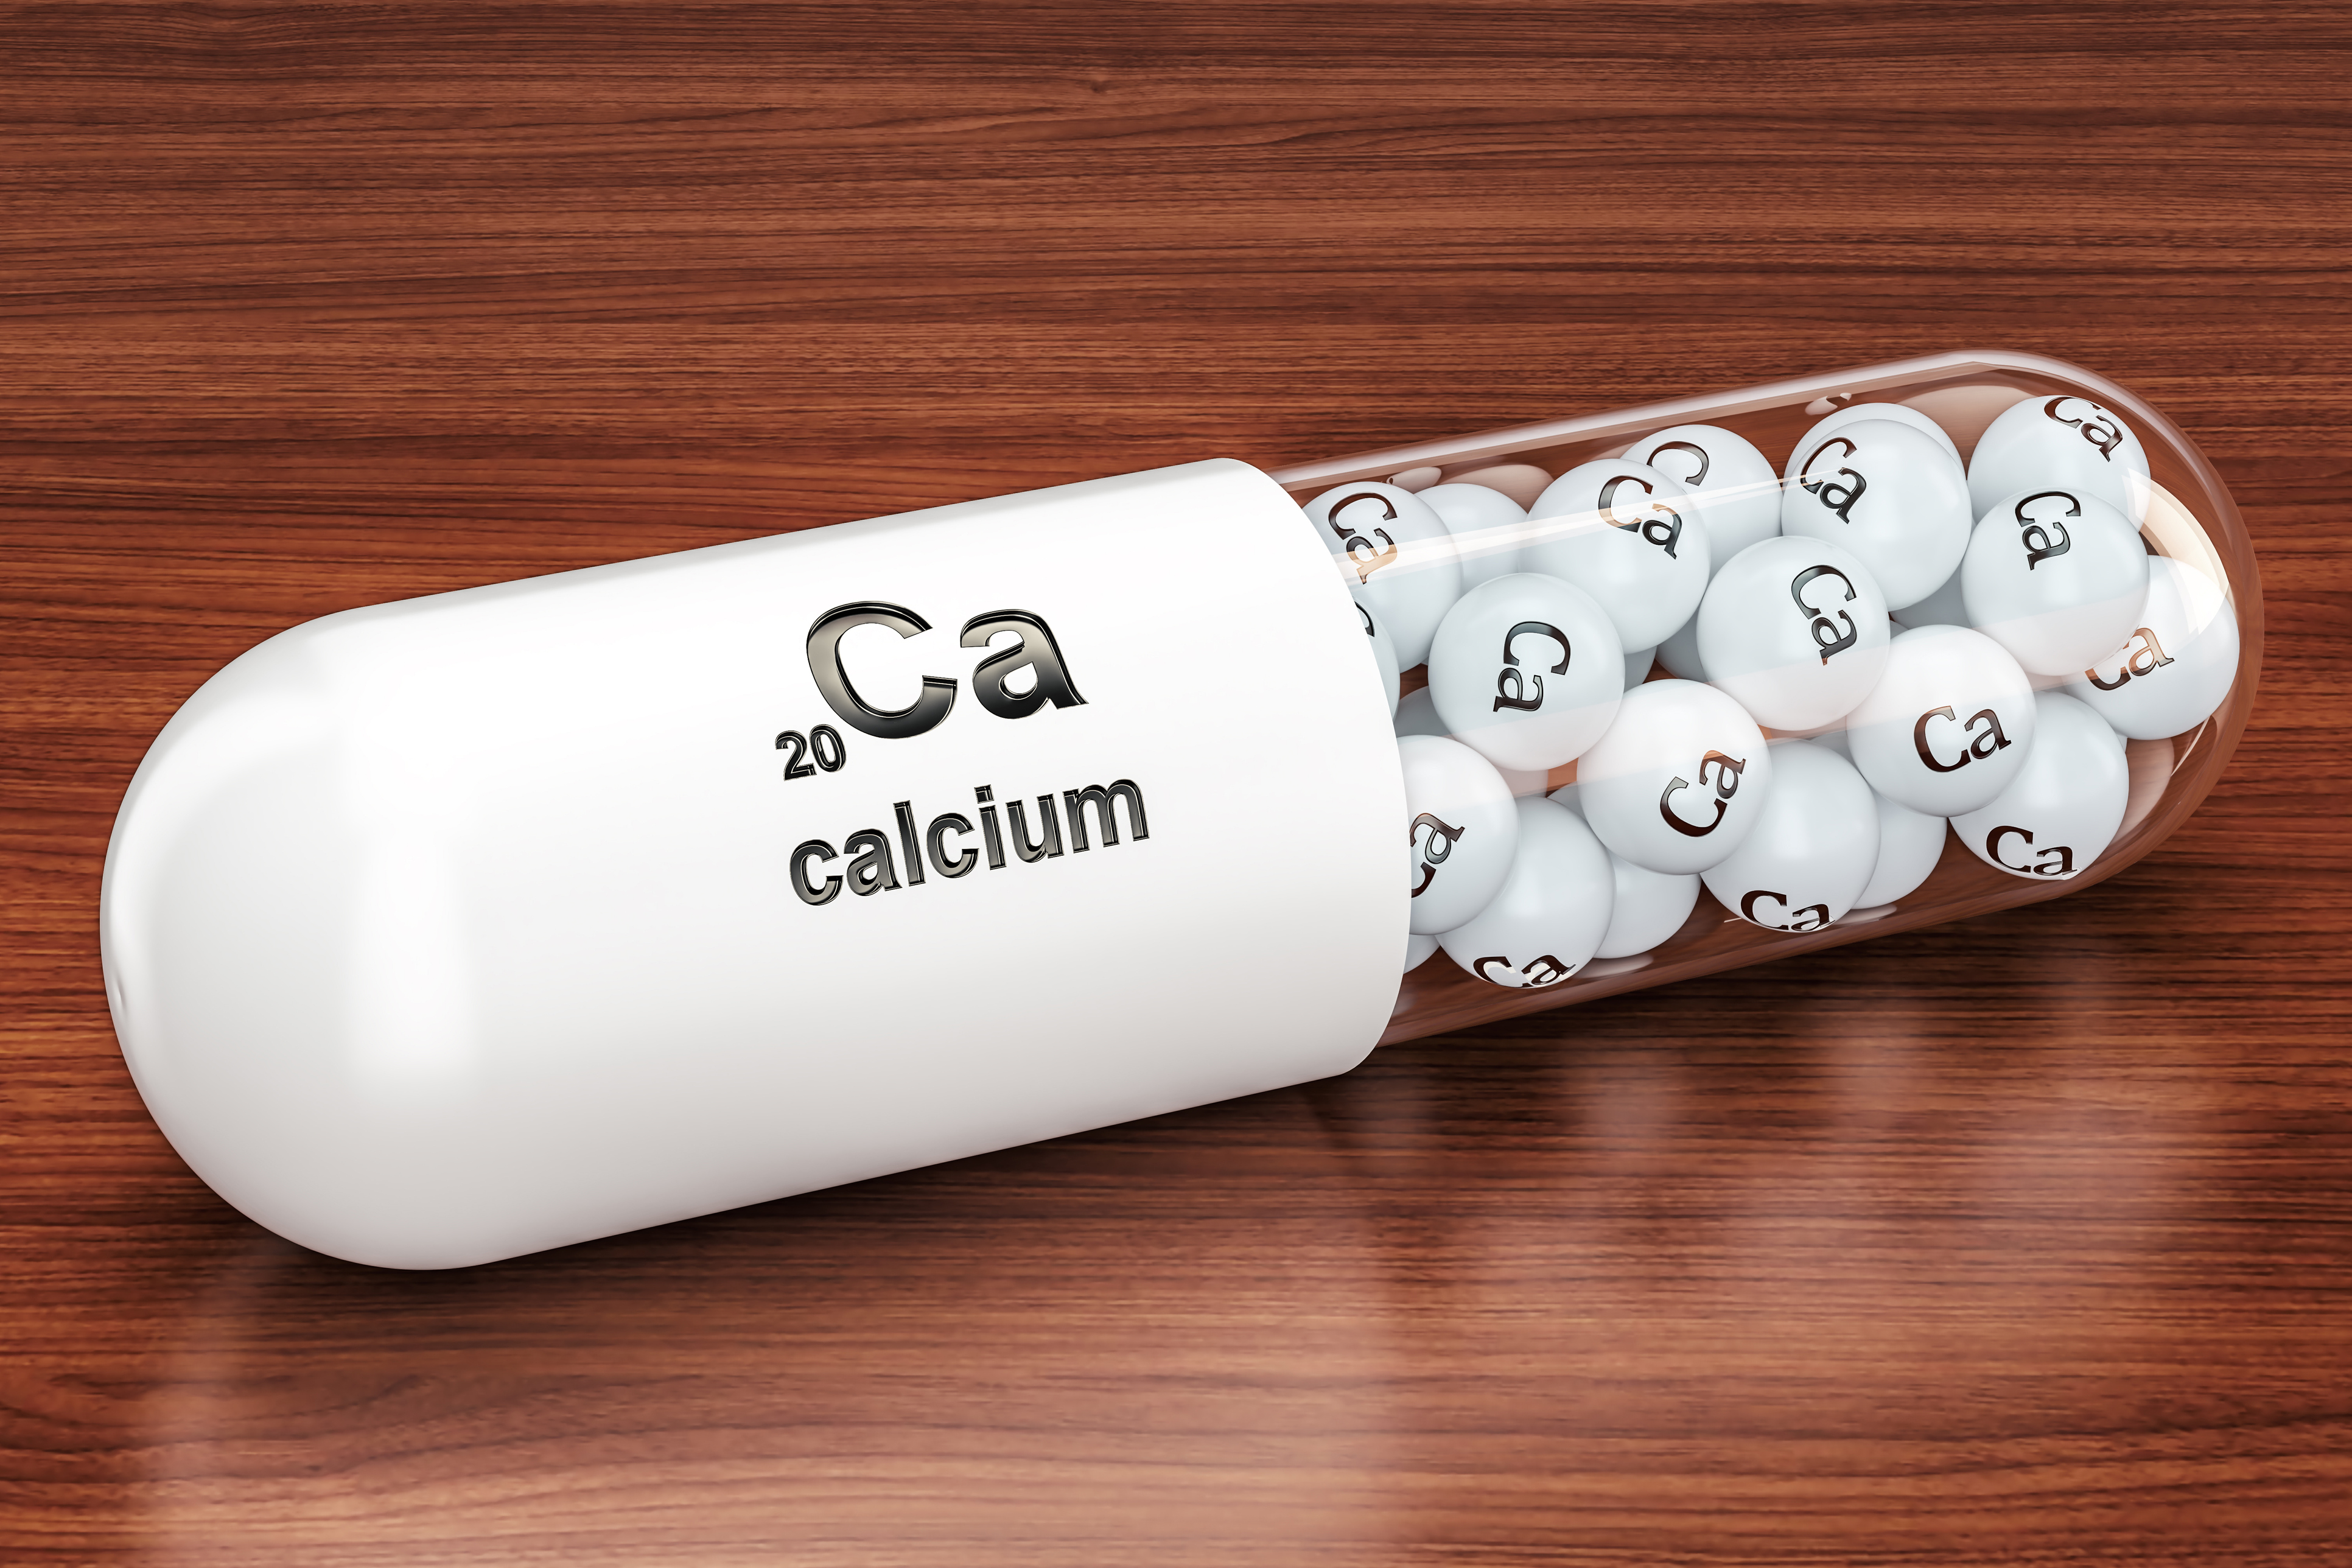 Calcium iStock-925917894